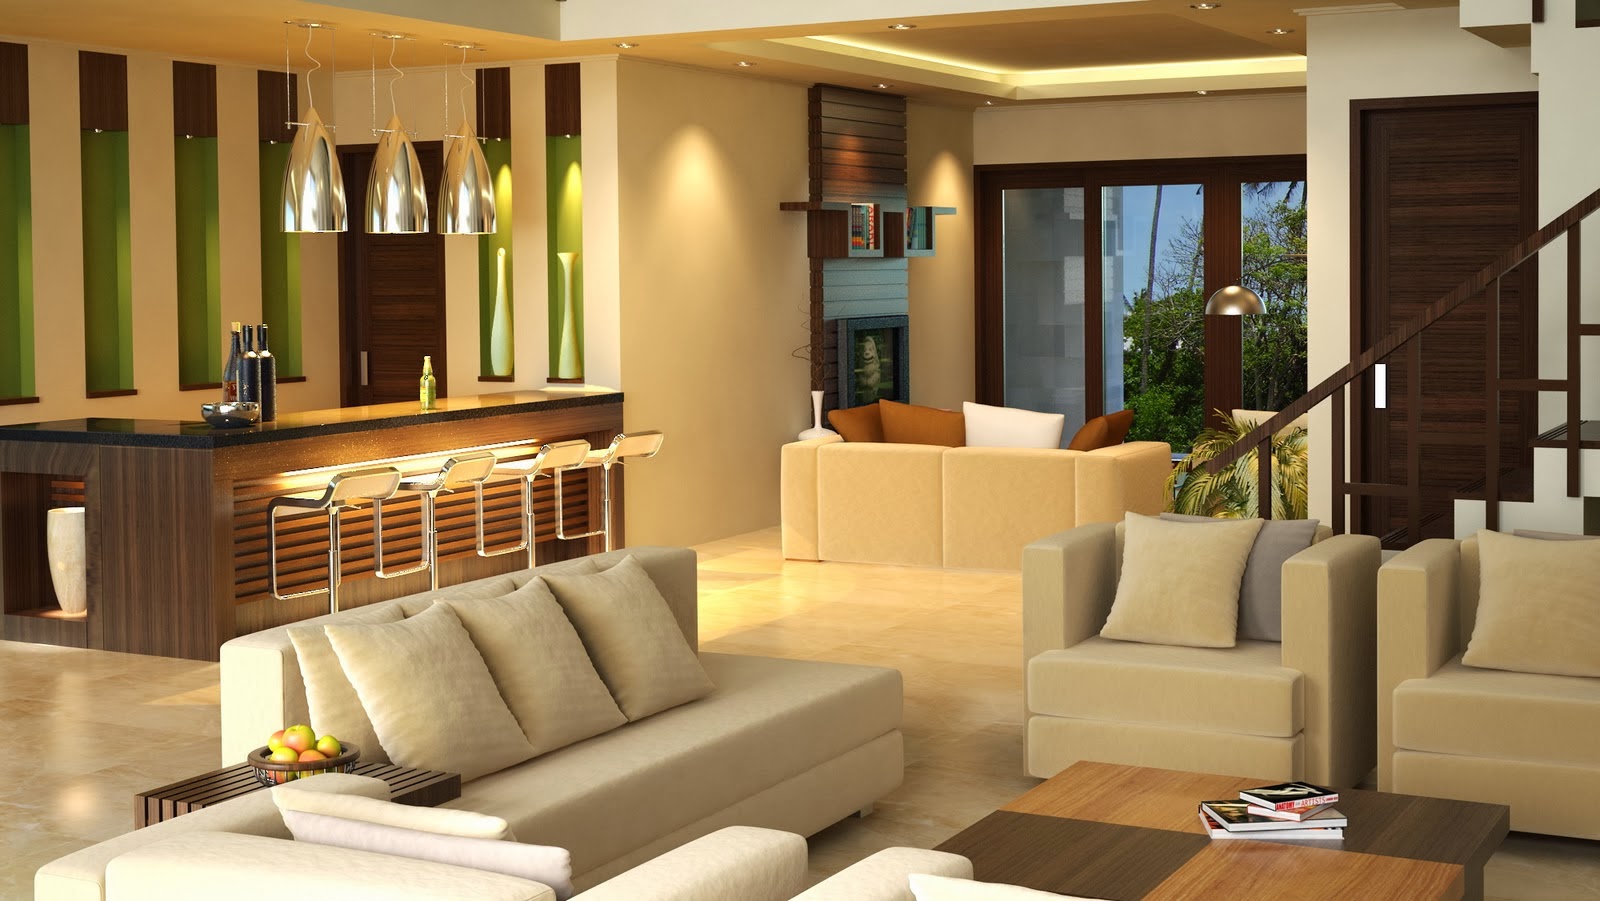 Desain Interior Ruang Tamu Minimalis Rumah Sederhana 